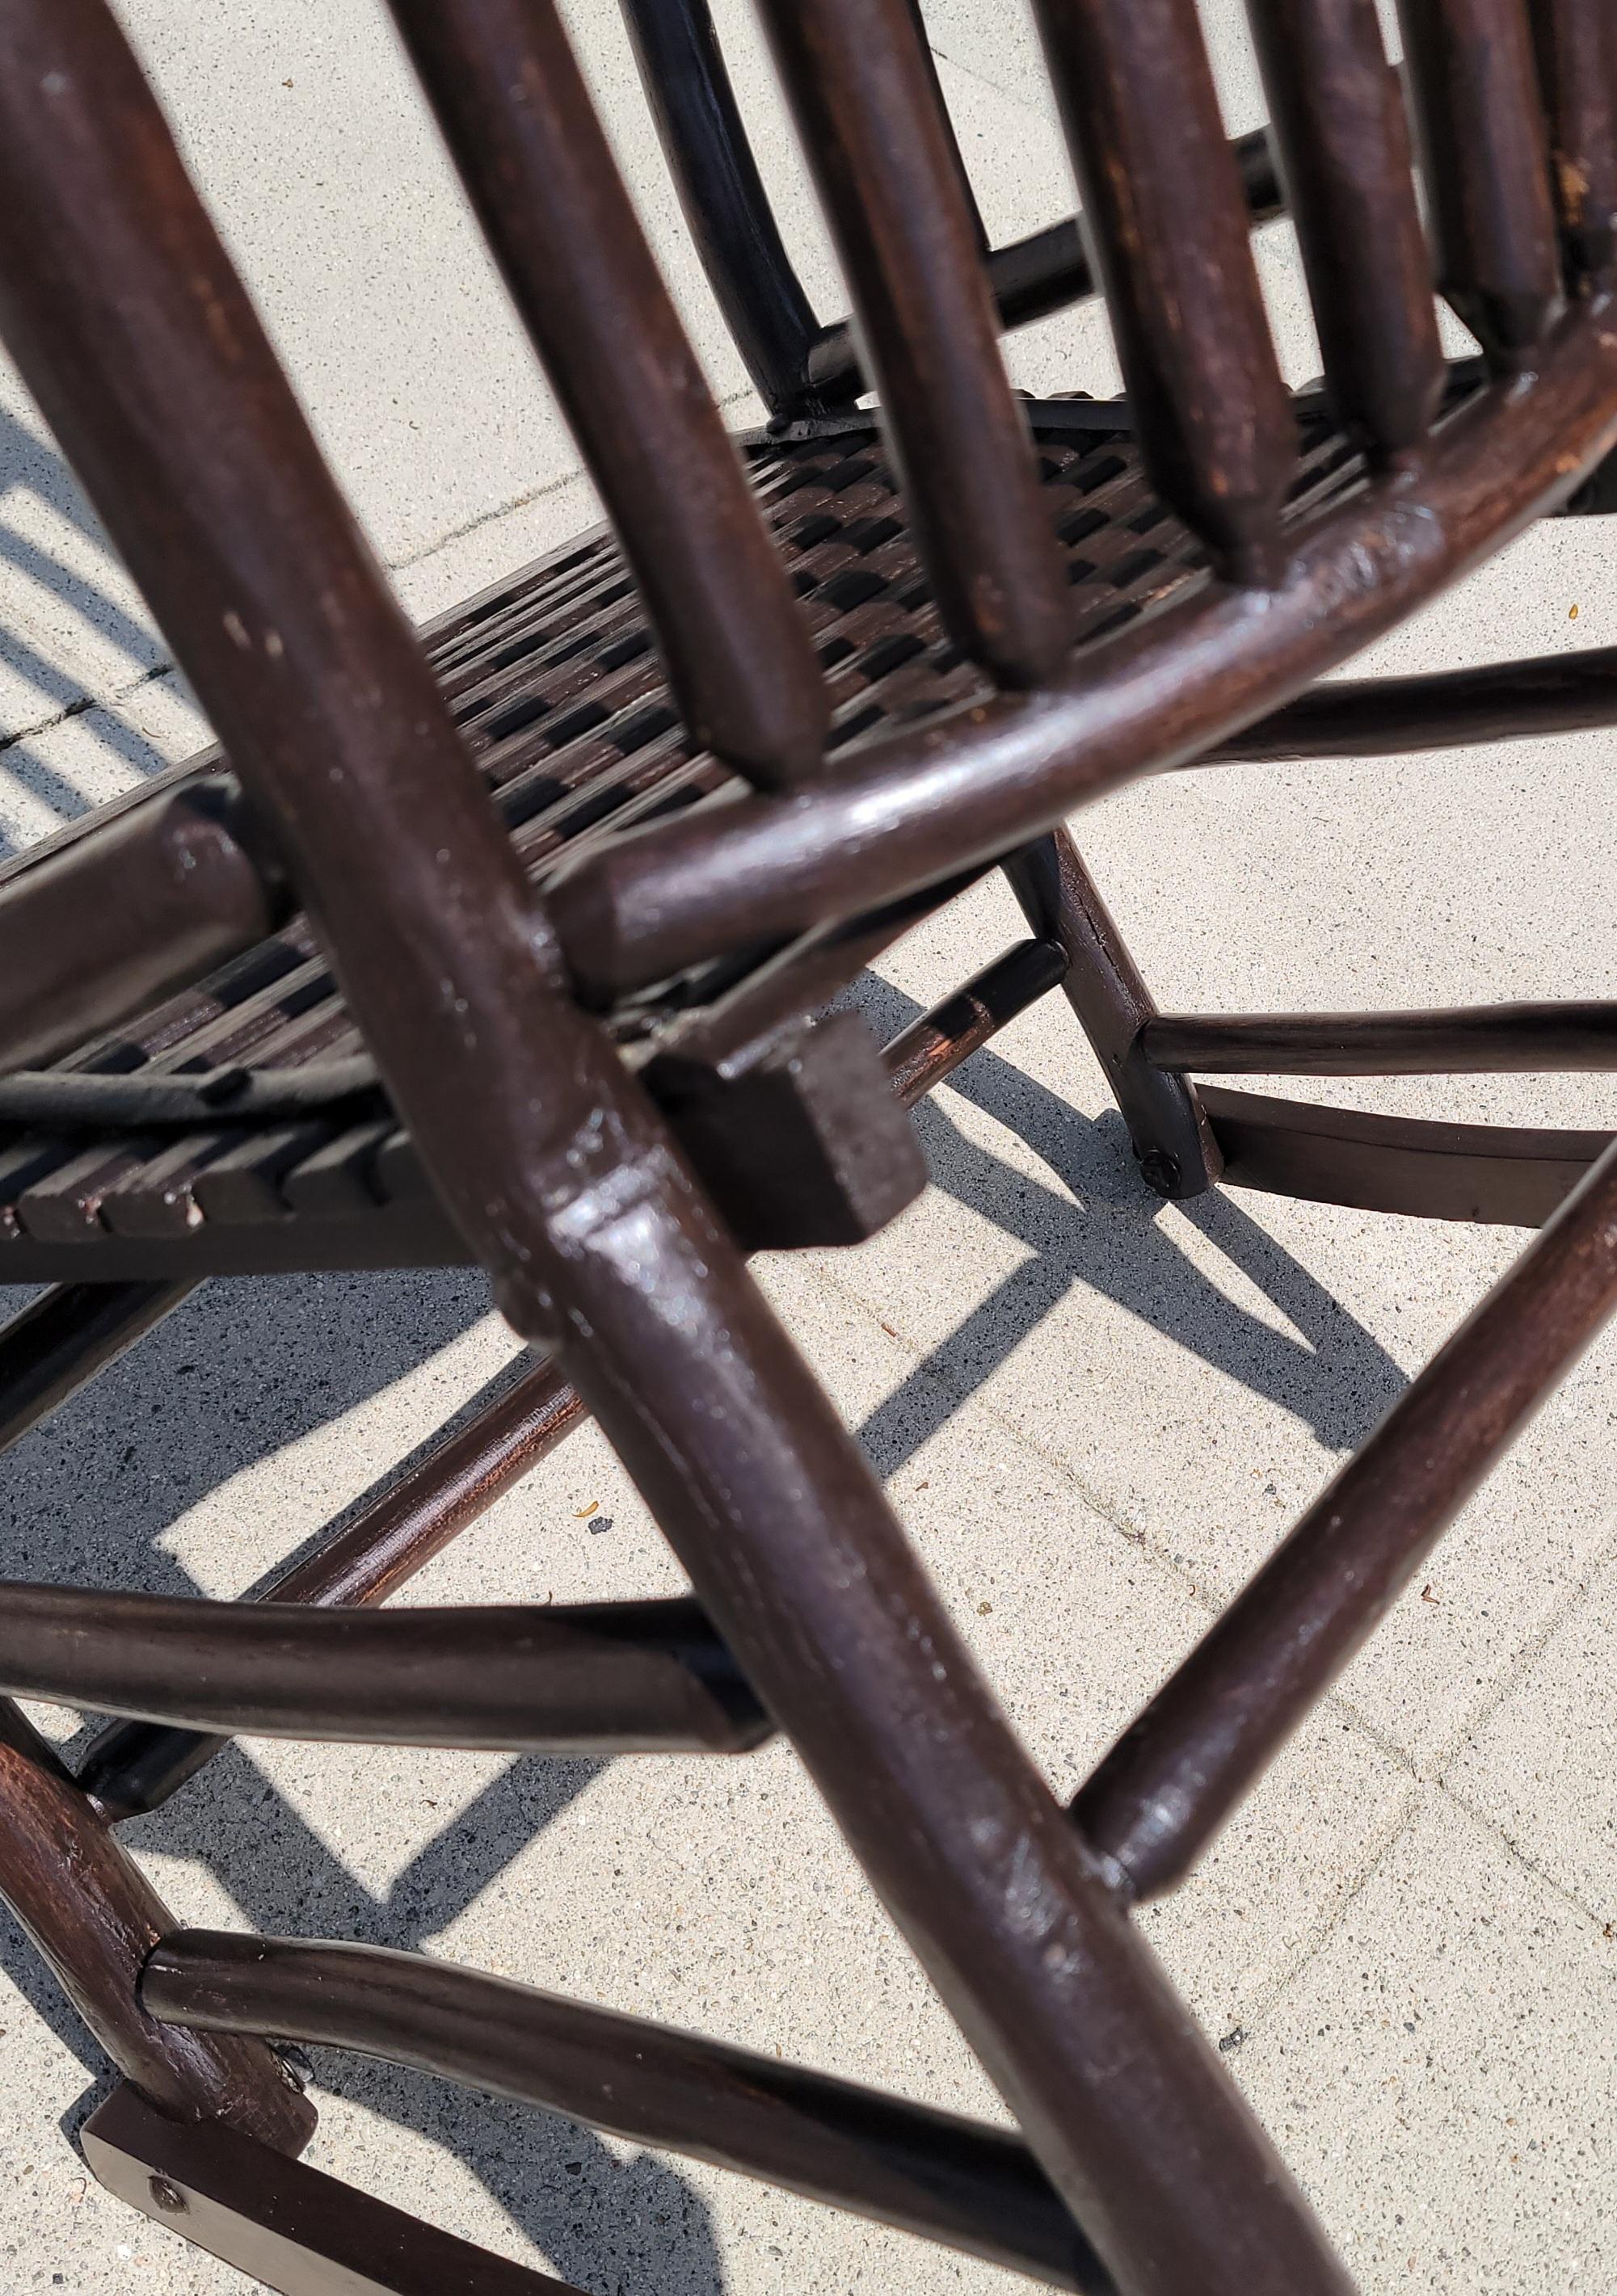 Fauteuil à bascule en hickory du 19e siècle. Chaise à bascule solide et robuste. Les sièges sont fabriqués en  et offrent une sensation de douceur au niveau de la zone lombaire. Chaise à bascule douce avec la qualité d'un vieux meuble en hickory.